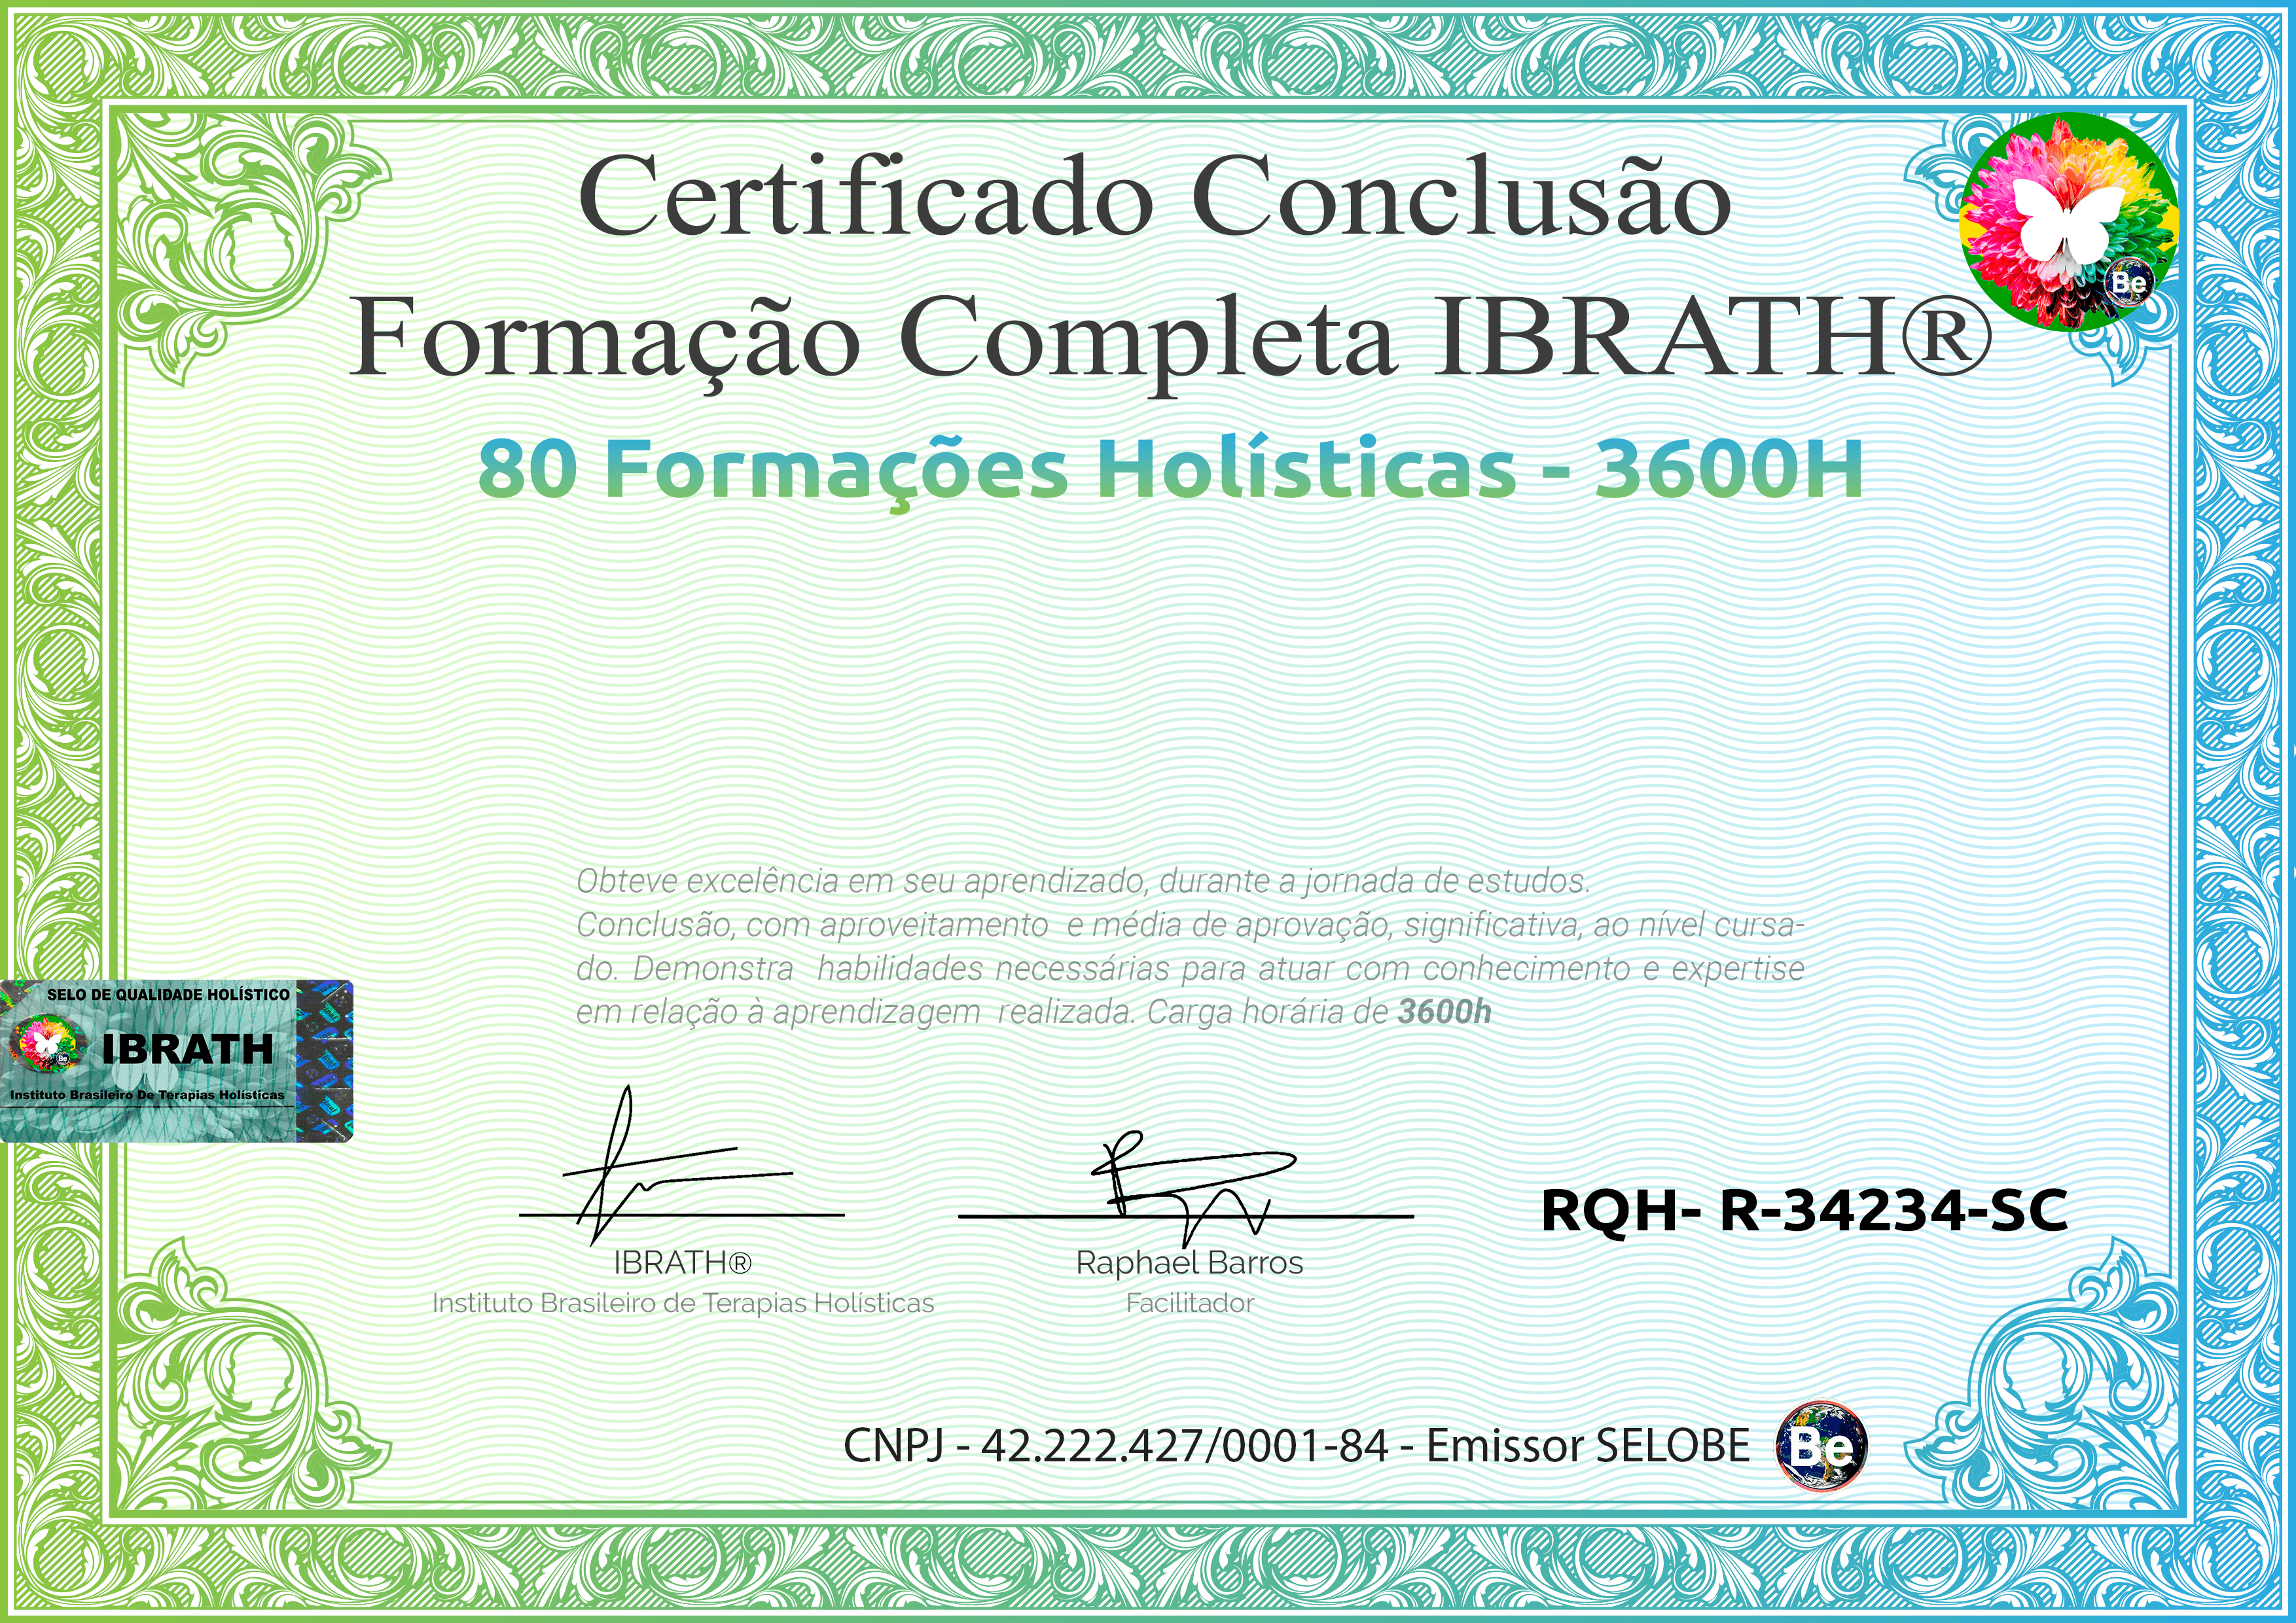 Terapias integrativas e complementares - IBRATH Instituto Brasileiro de Terapias Holísticas Curso Online, Formações Online, mais vendidos, todos